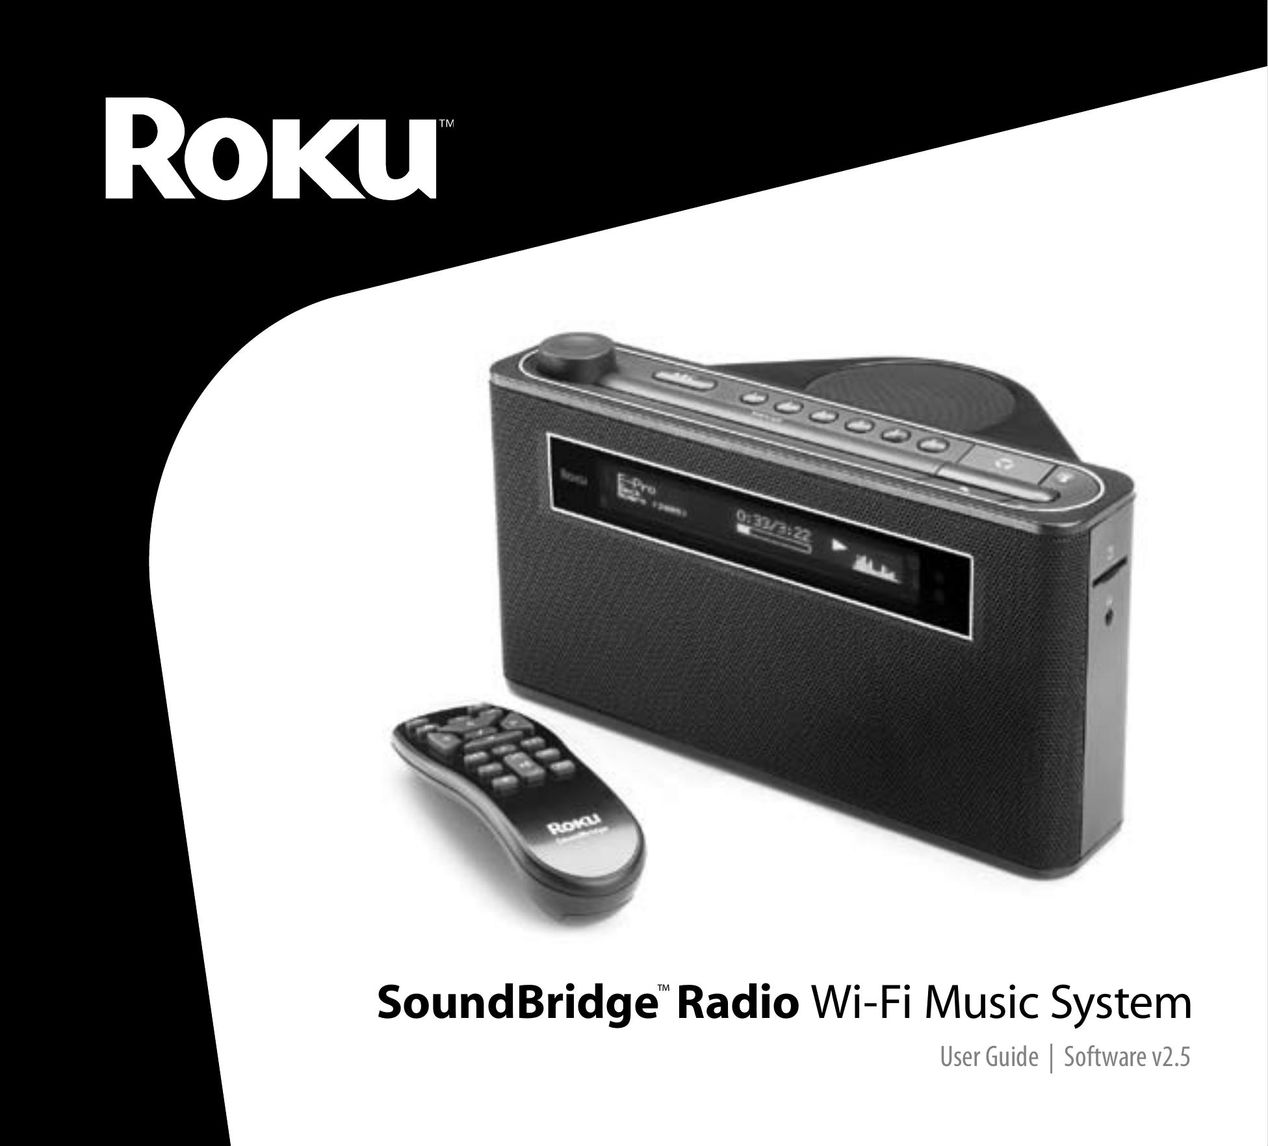 Roku Radio Wi-Fi Music System Portable Radio User Manual